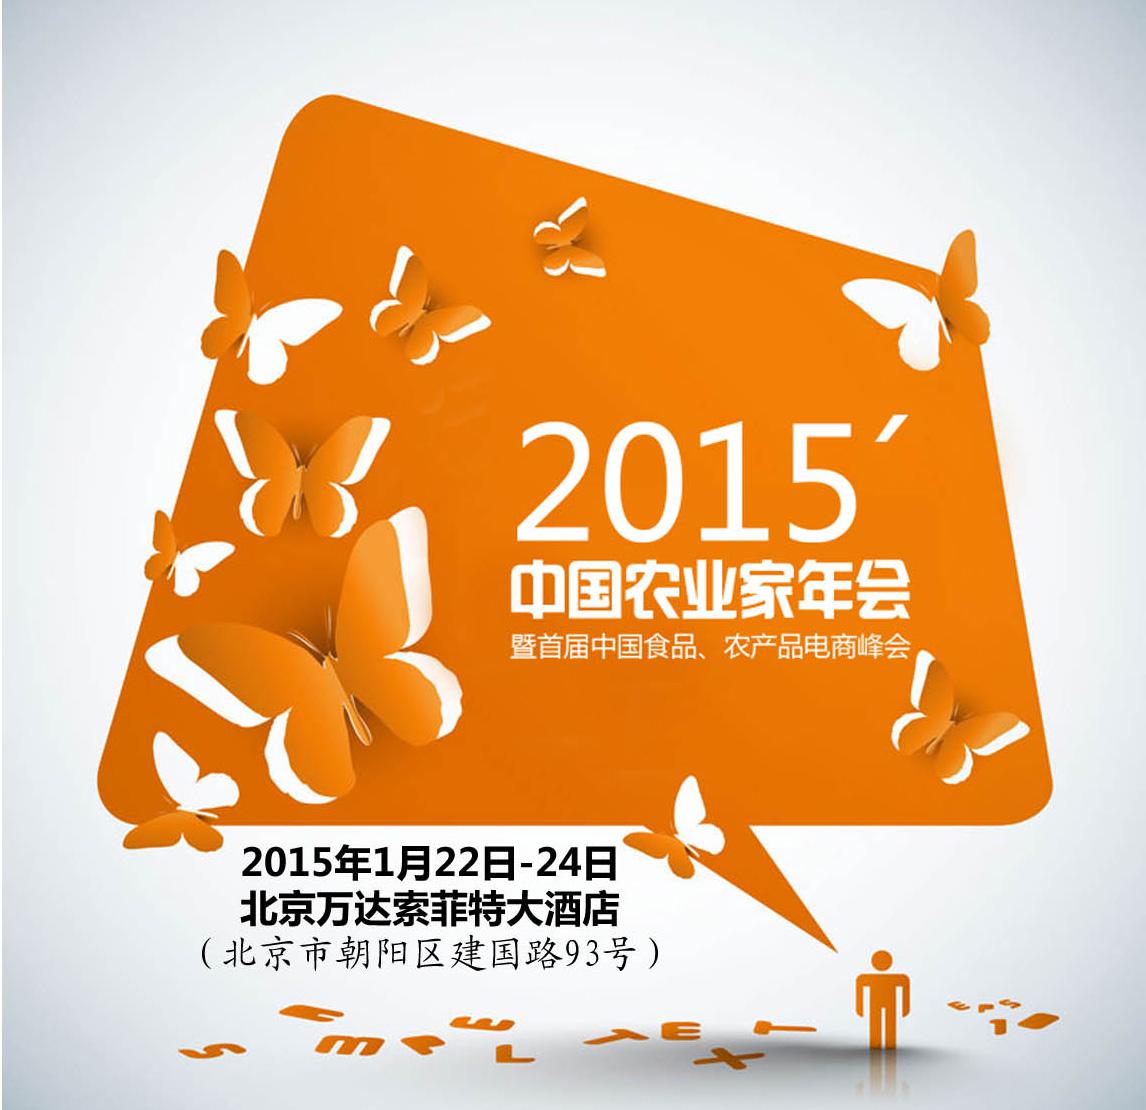 搭企业交流平台，促品牌农业发展 ——2015年中国农业家年会召开在即